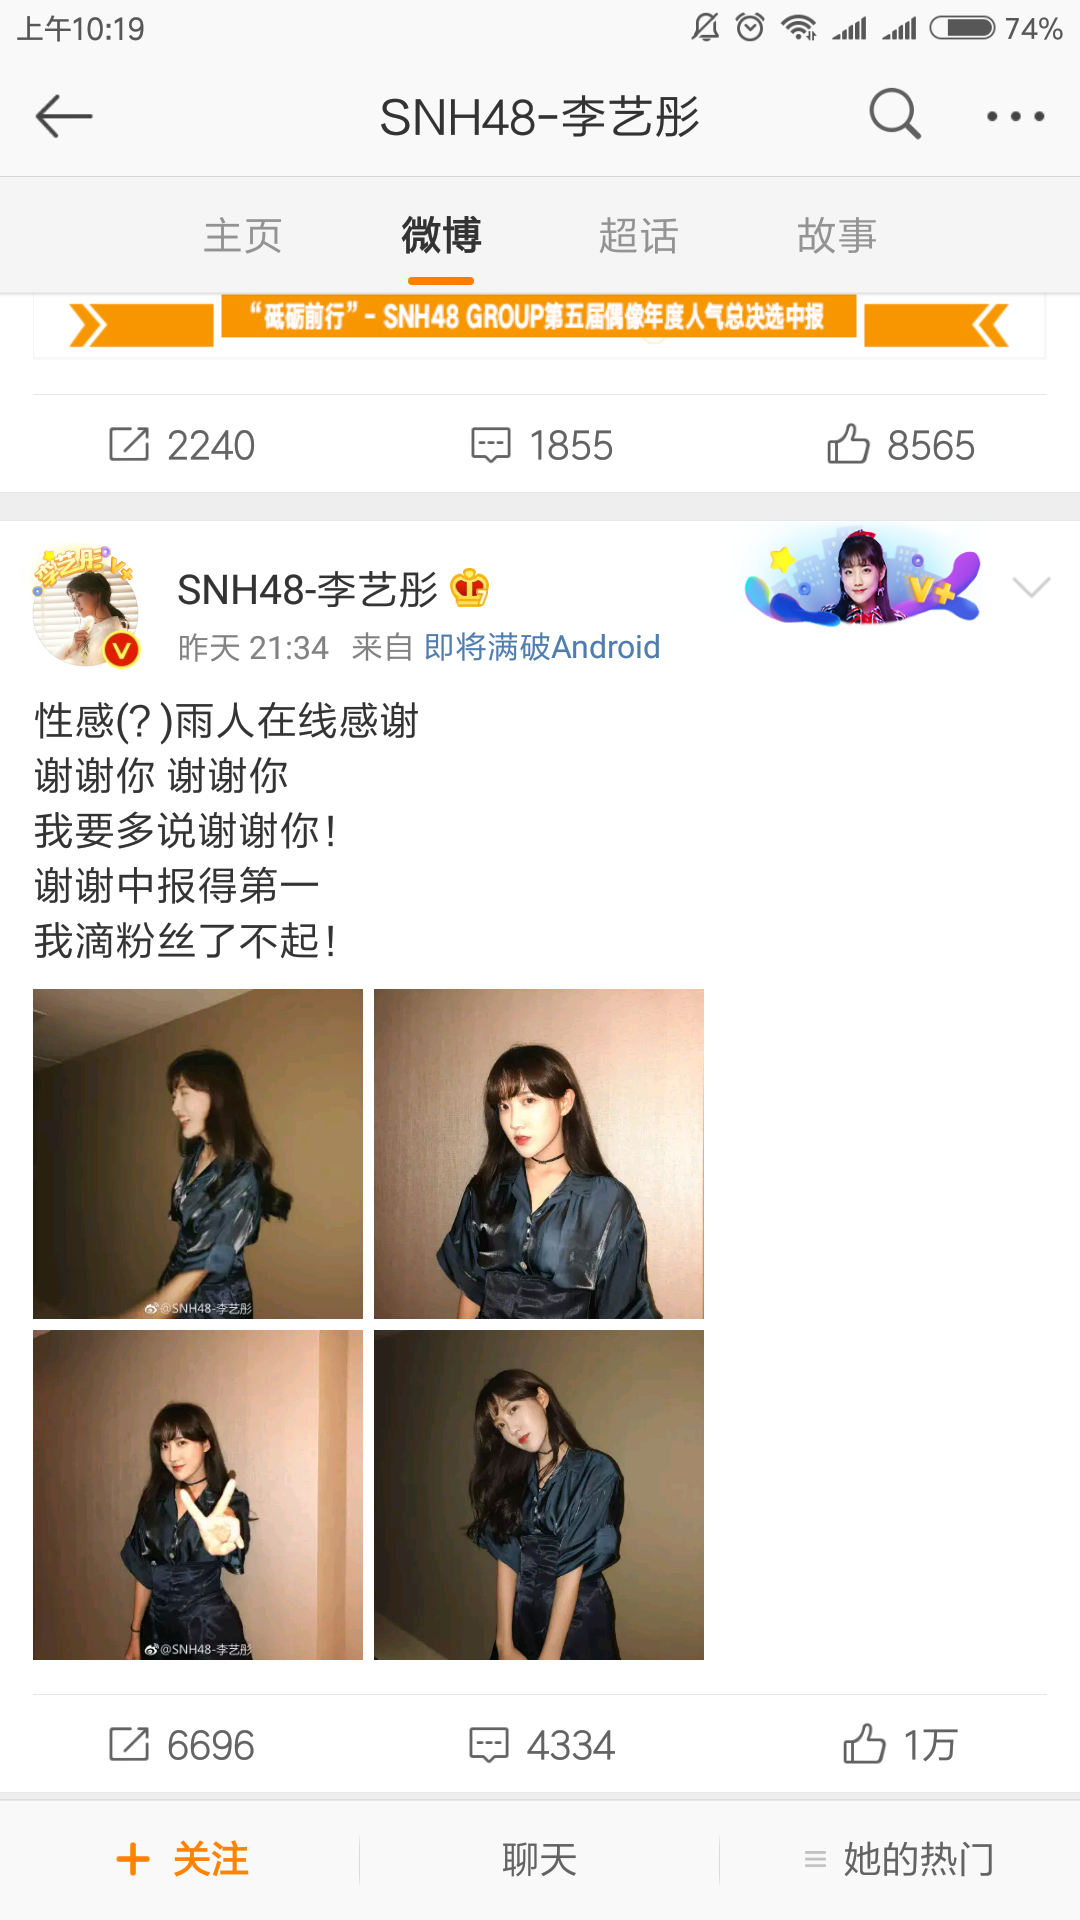 SNH48中报李艺彤第一，黄婷婷紧随其后